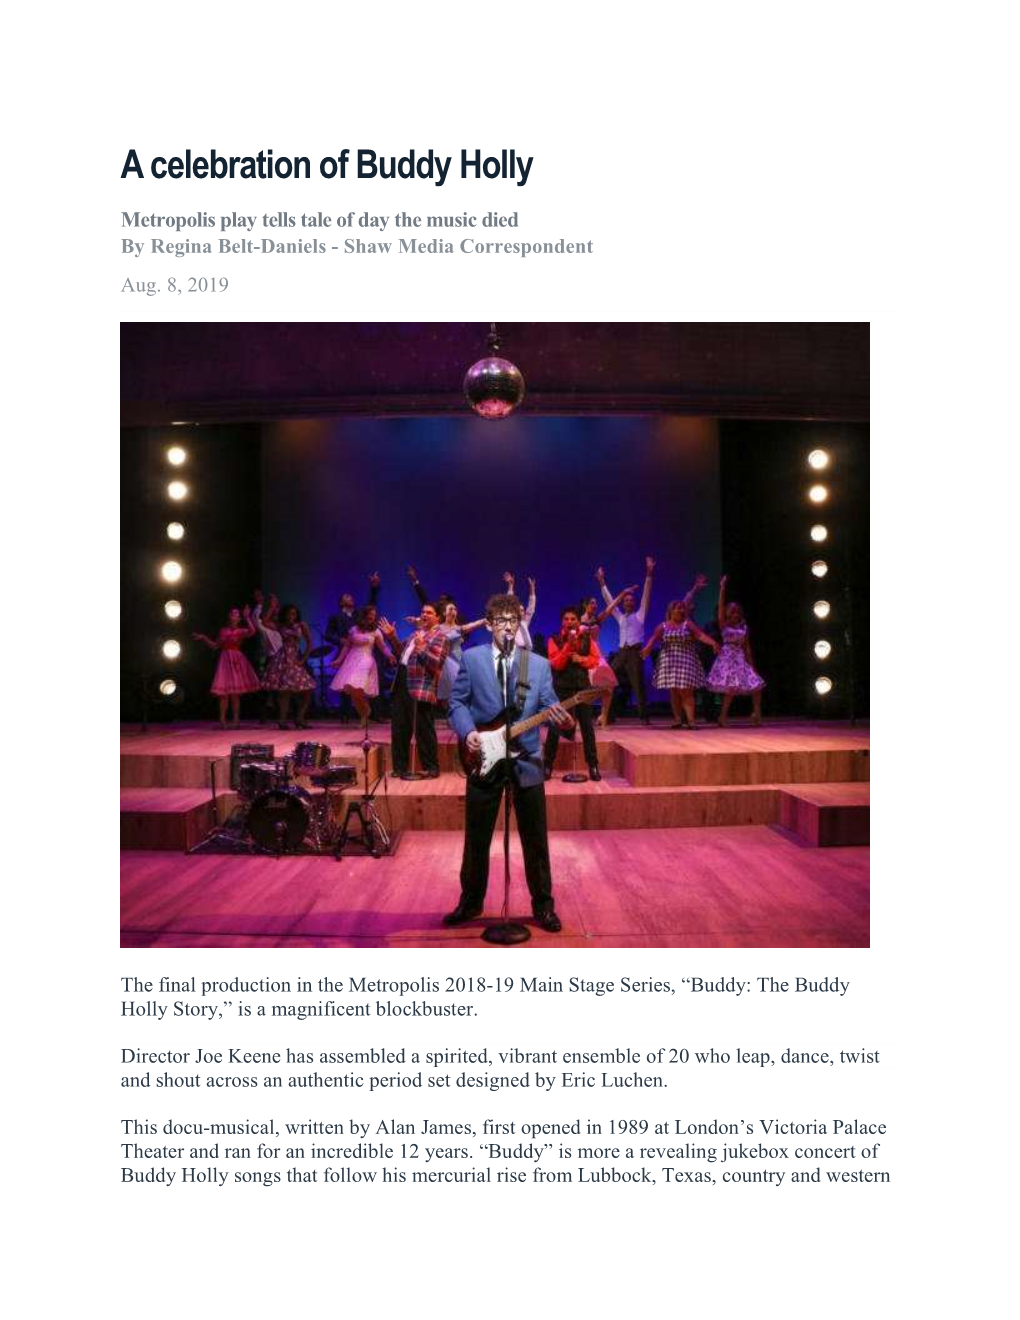 A Celebration of Buddy Holly